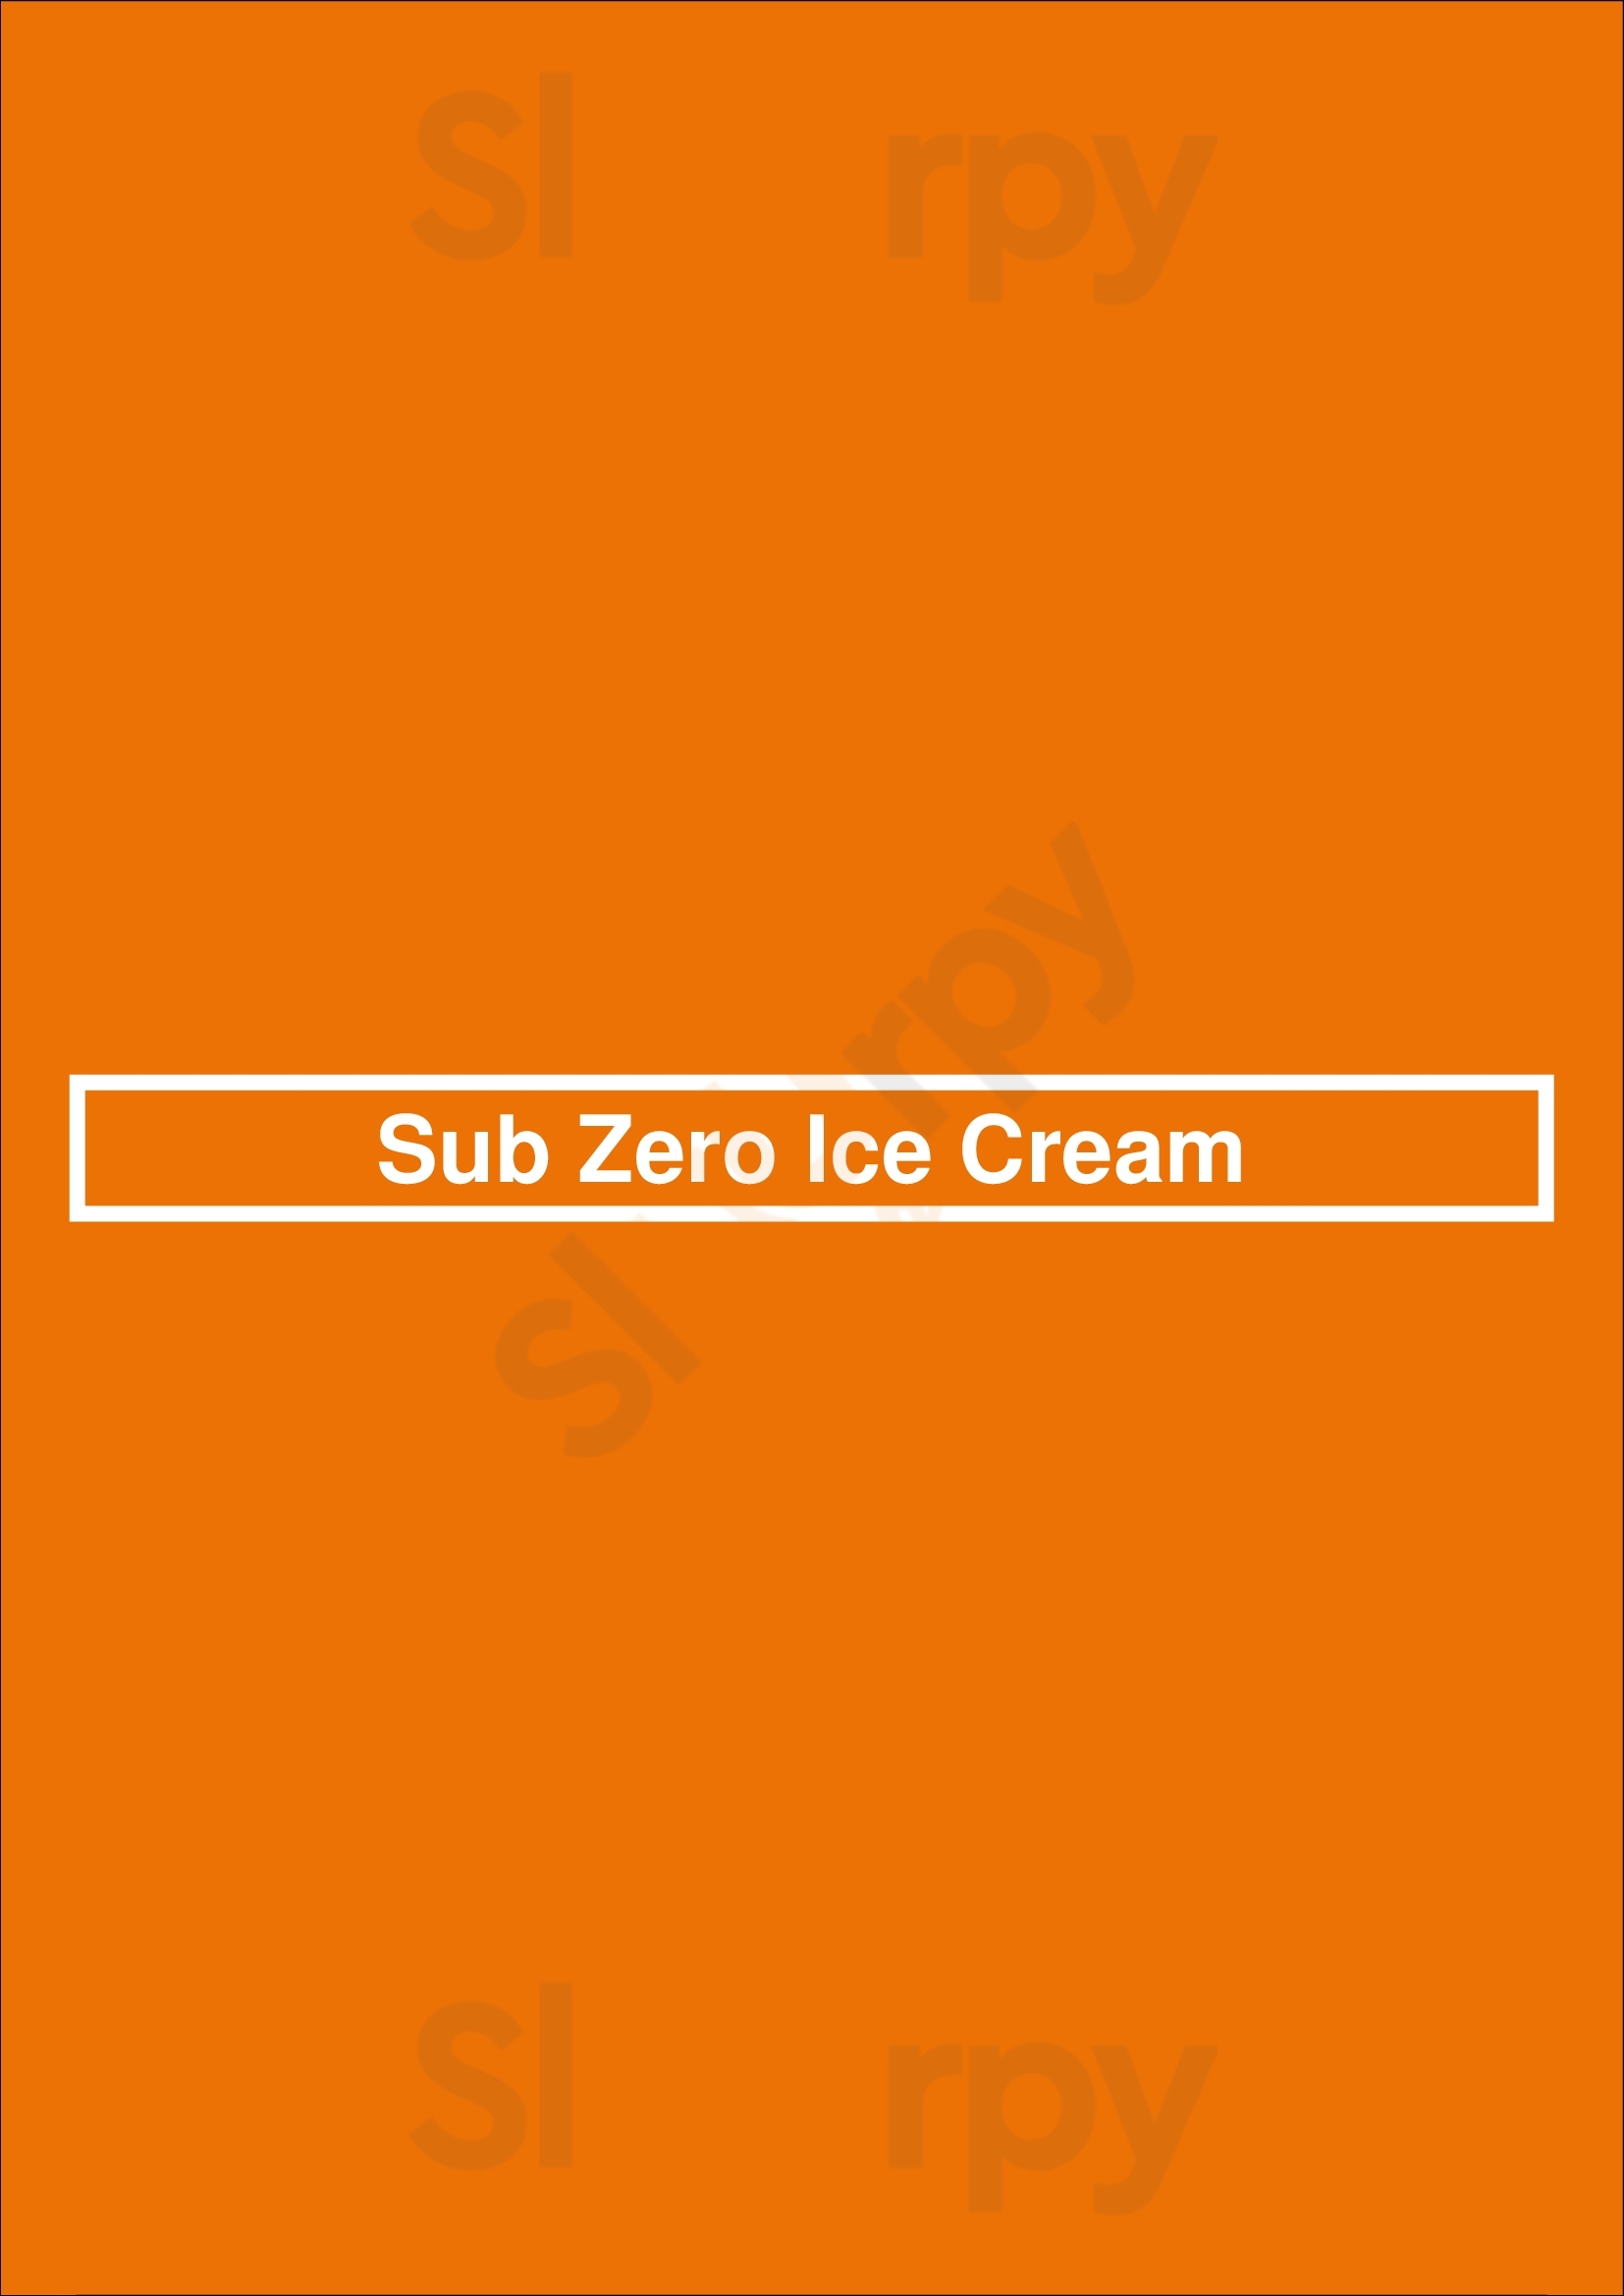 Sub Zero Ice Cream Winnipeg Menu - 1